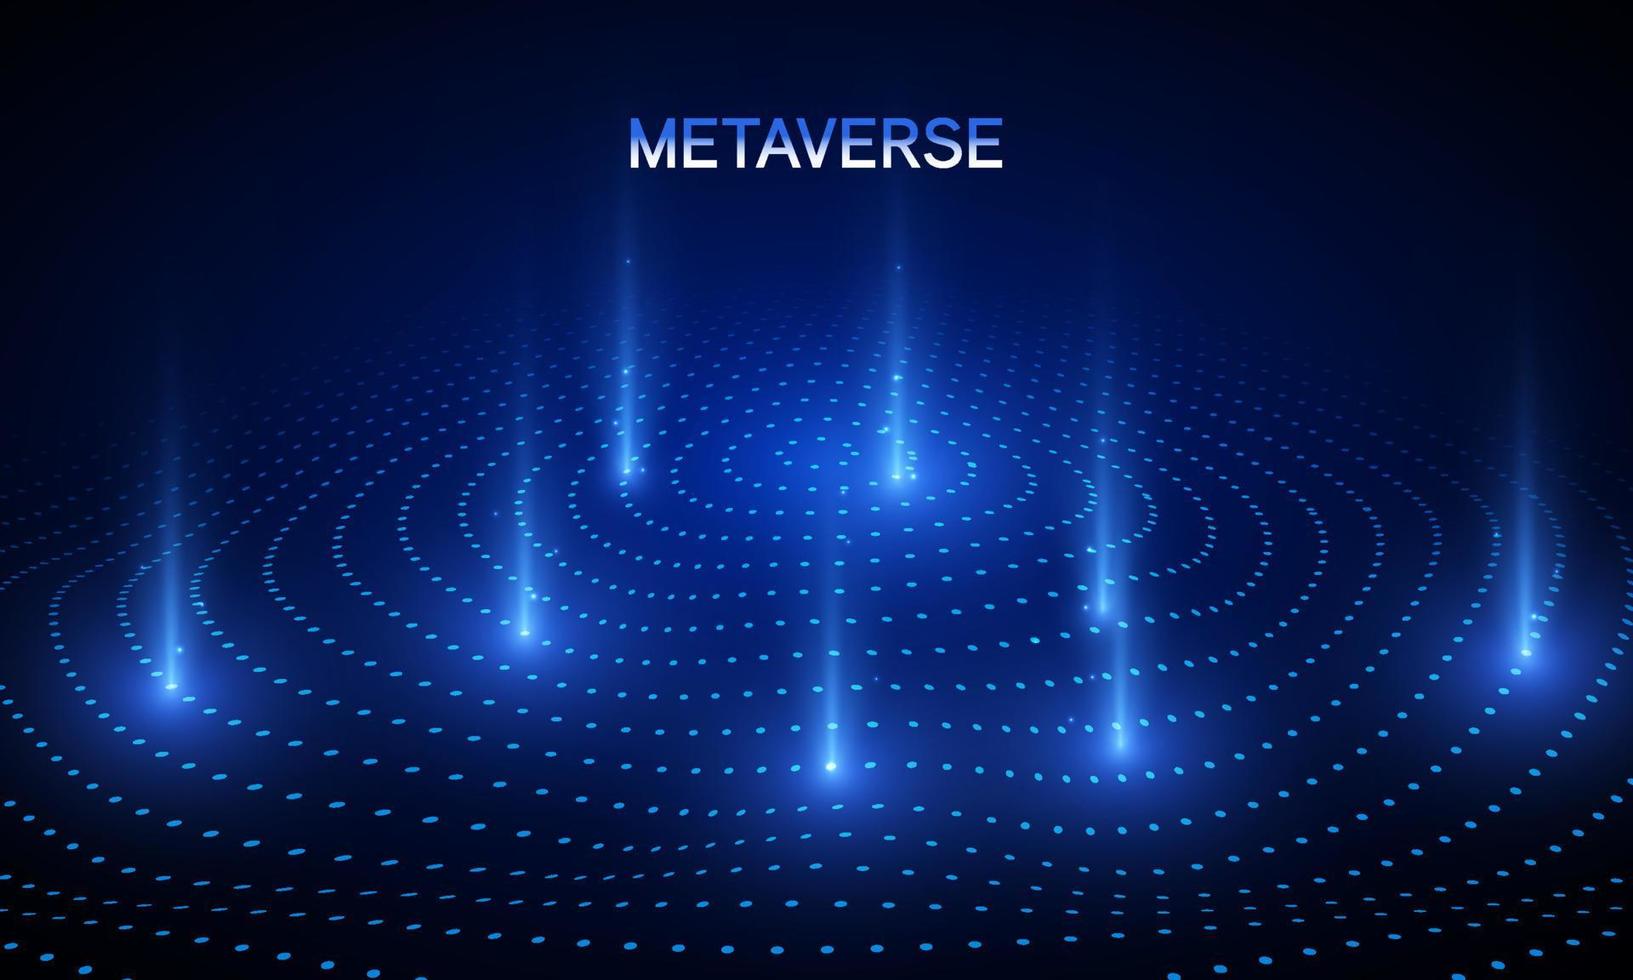 metaverse weltkarte globus blaue lichtpunkte muster wellenhintergrund im konzept metaverse, virtuelle realität, erweiterte realität und blockchain-technologie. vektor